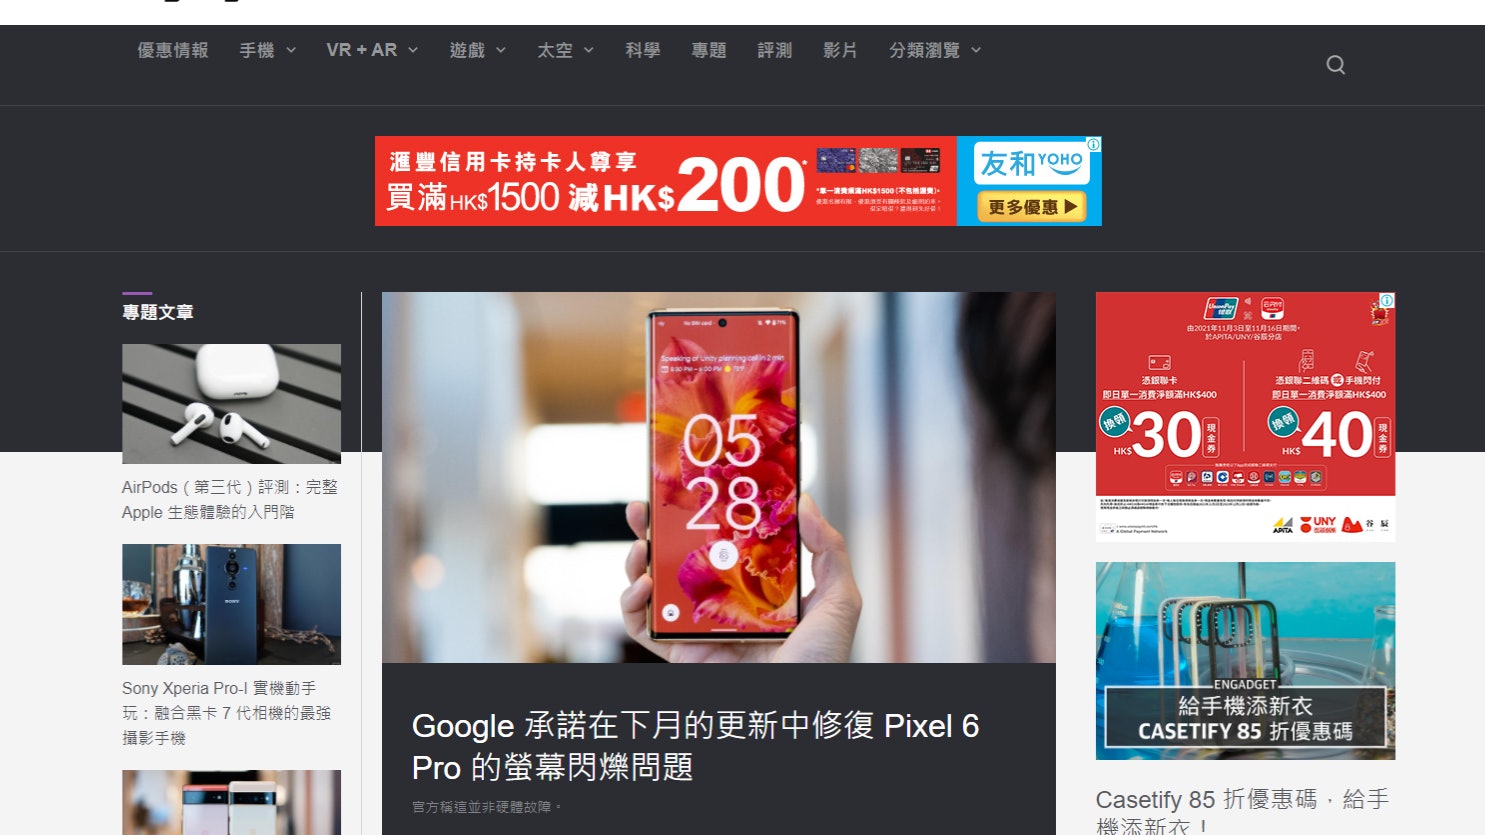 昔日全球第一搜索网站雅虎宣布中国停用相关产品及服务